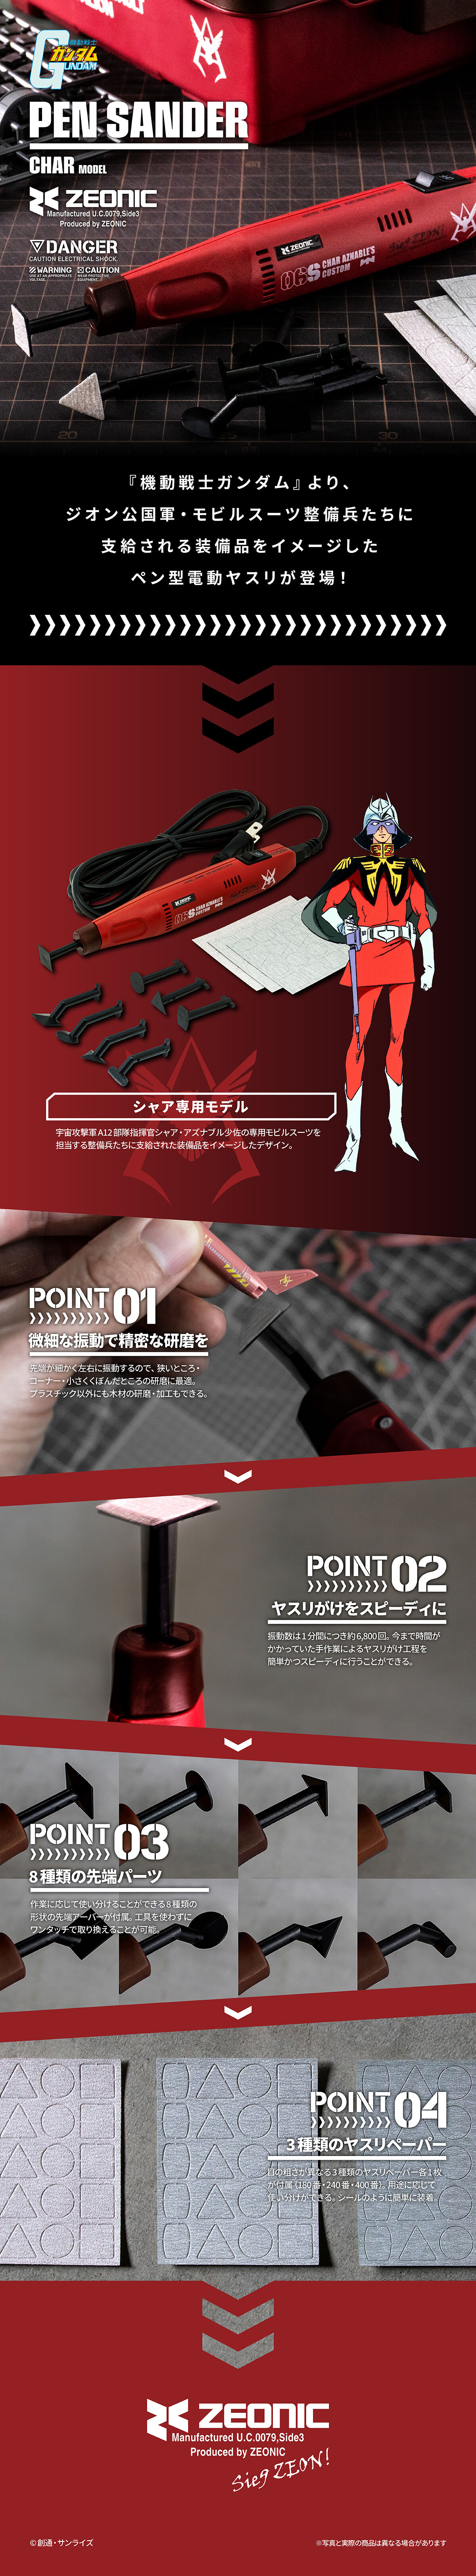 PB網限 機動戰士高達 筆型電動打磨機 夏亞專用色 10890日元